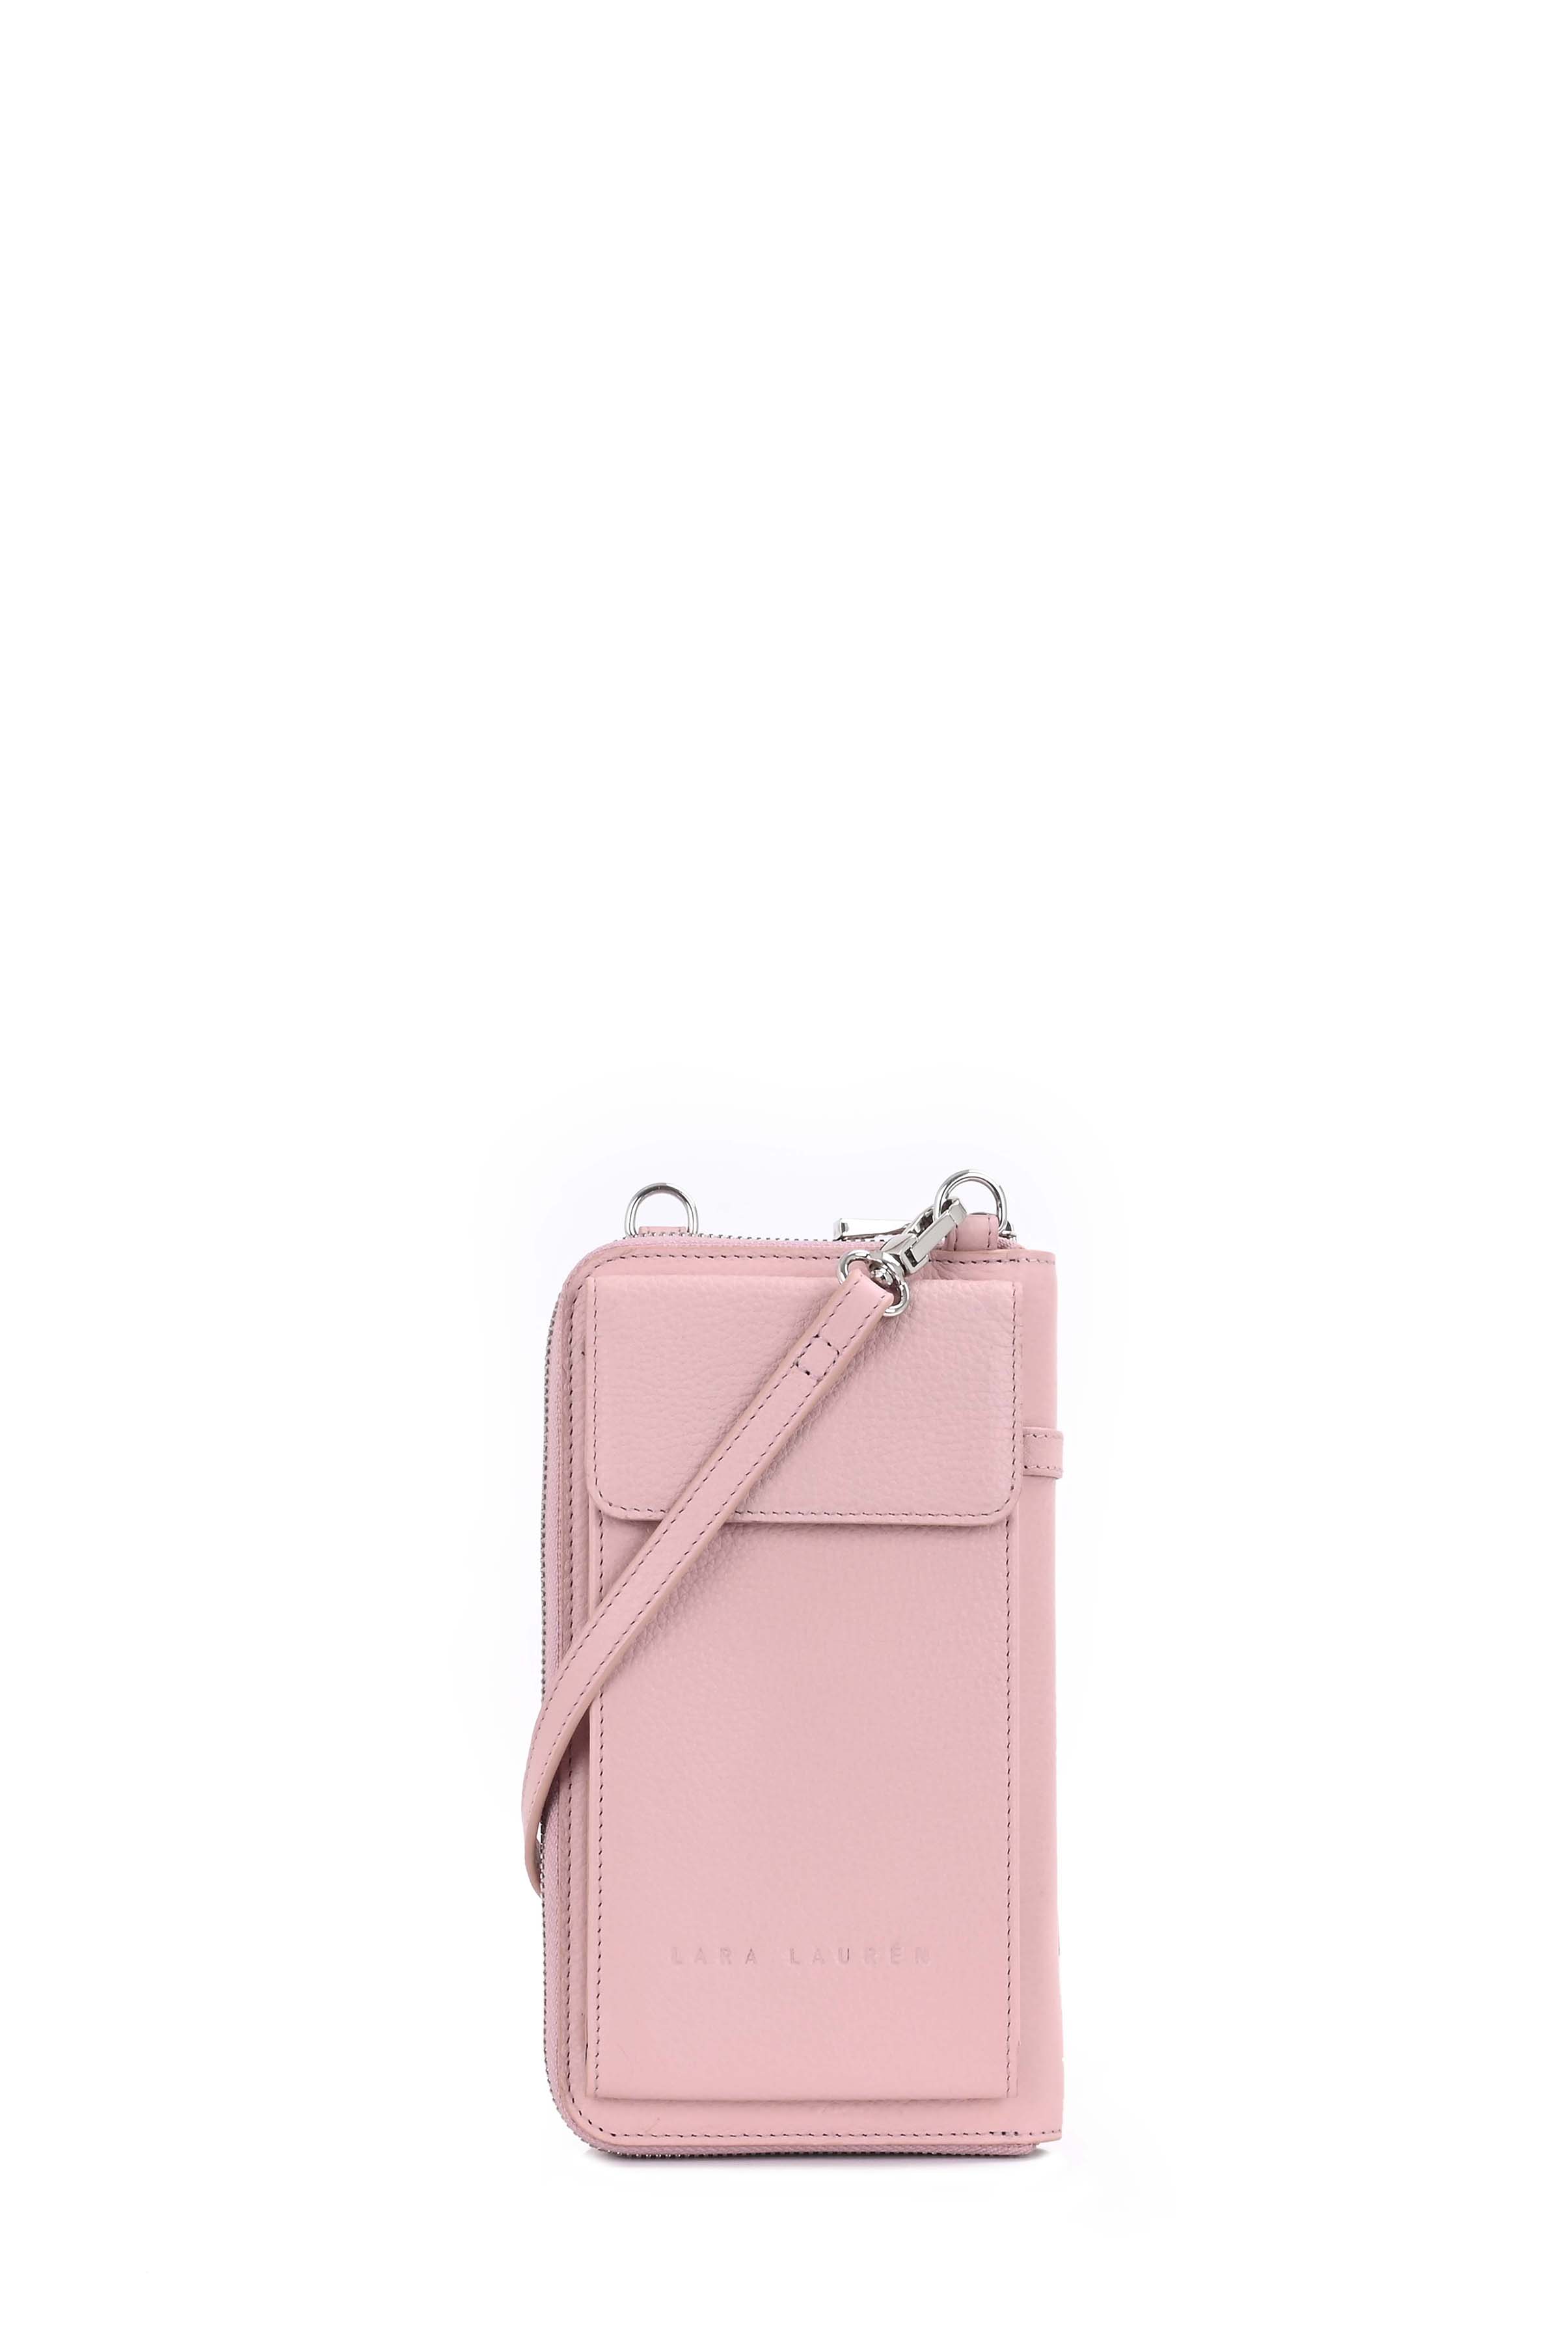 City Wallet A Mobilebag, pale mauve/ rose